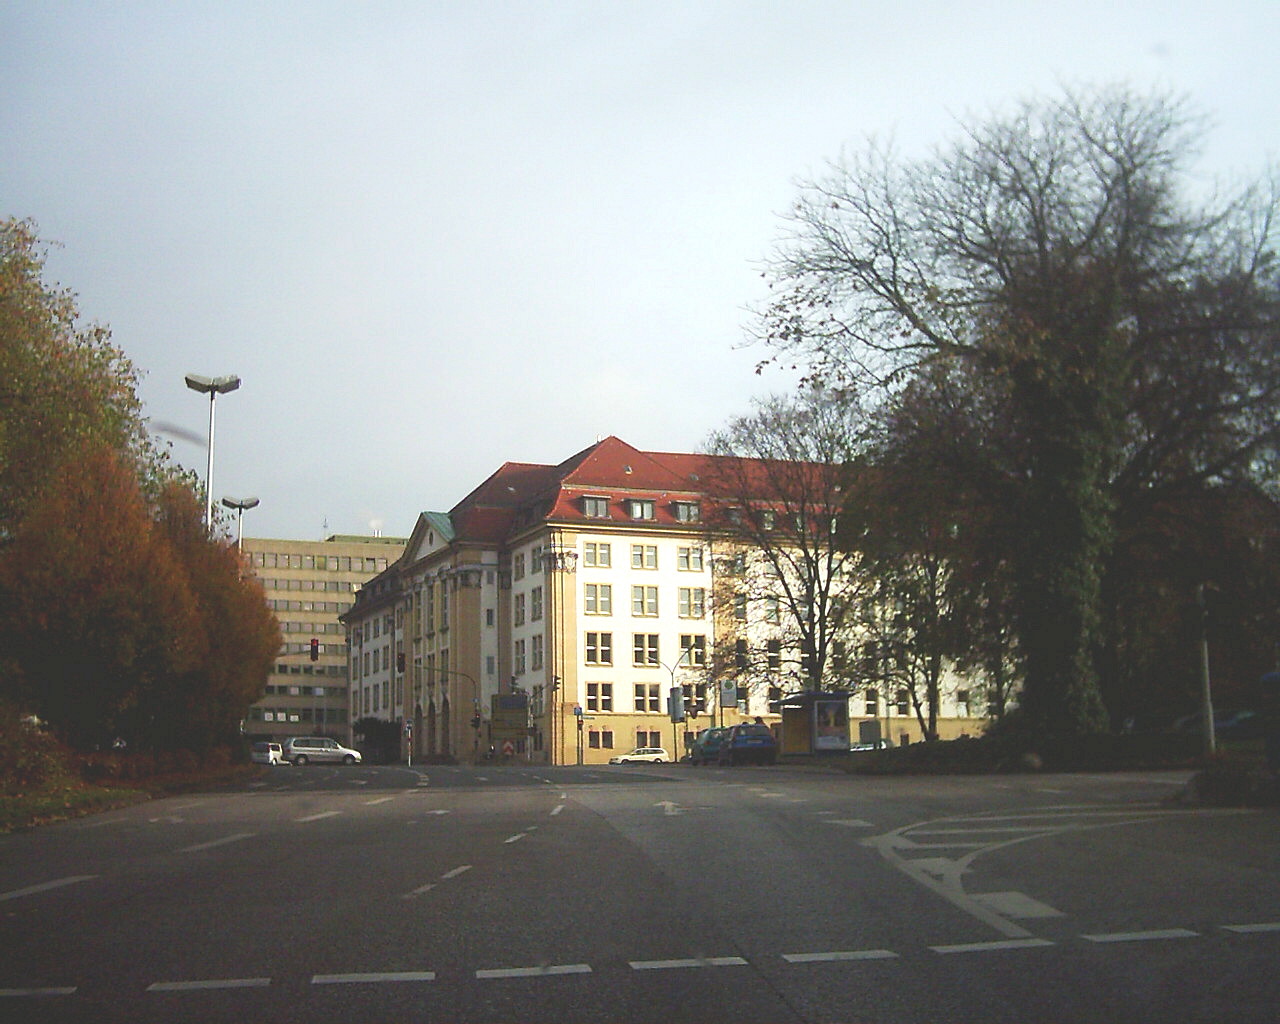 D/NRW/HA/HagenerHeide/Heinitzstrasse/20041115_1020_DSCI0012_Landgerichtsgebaeude_von_SW